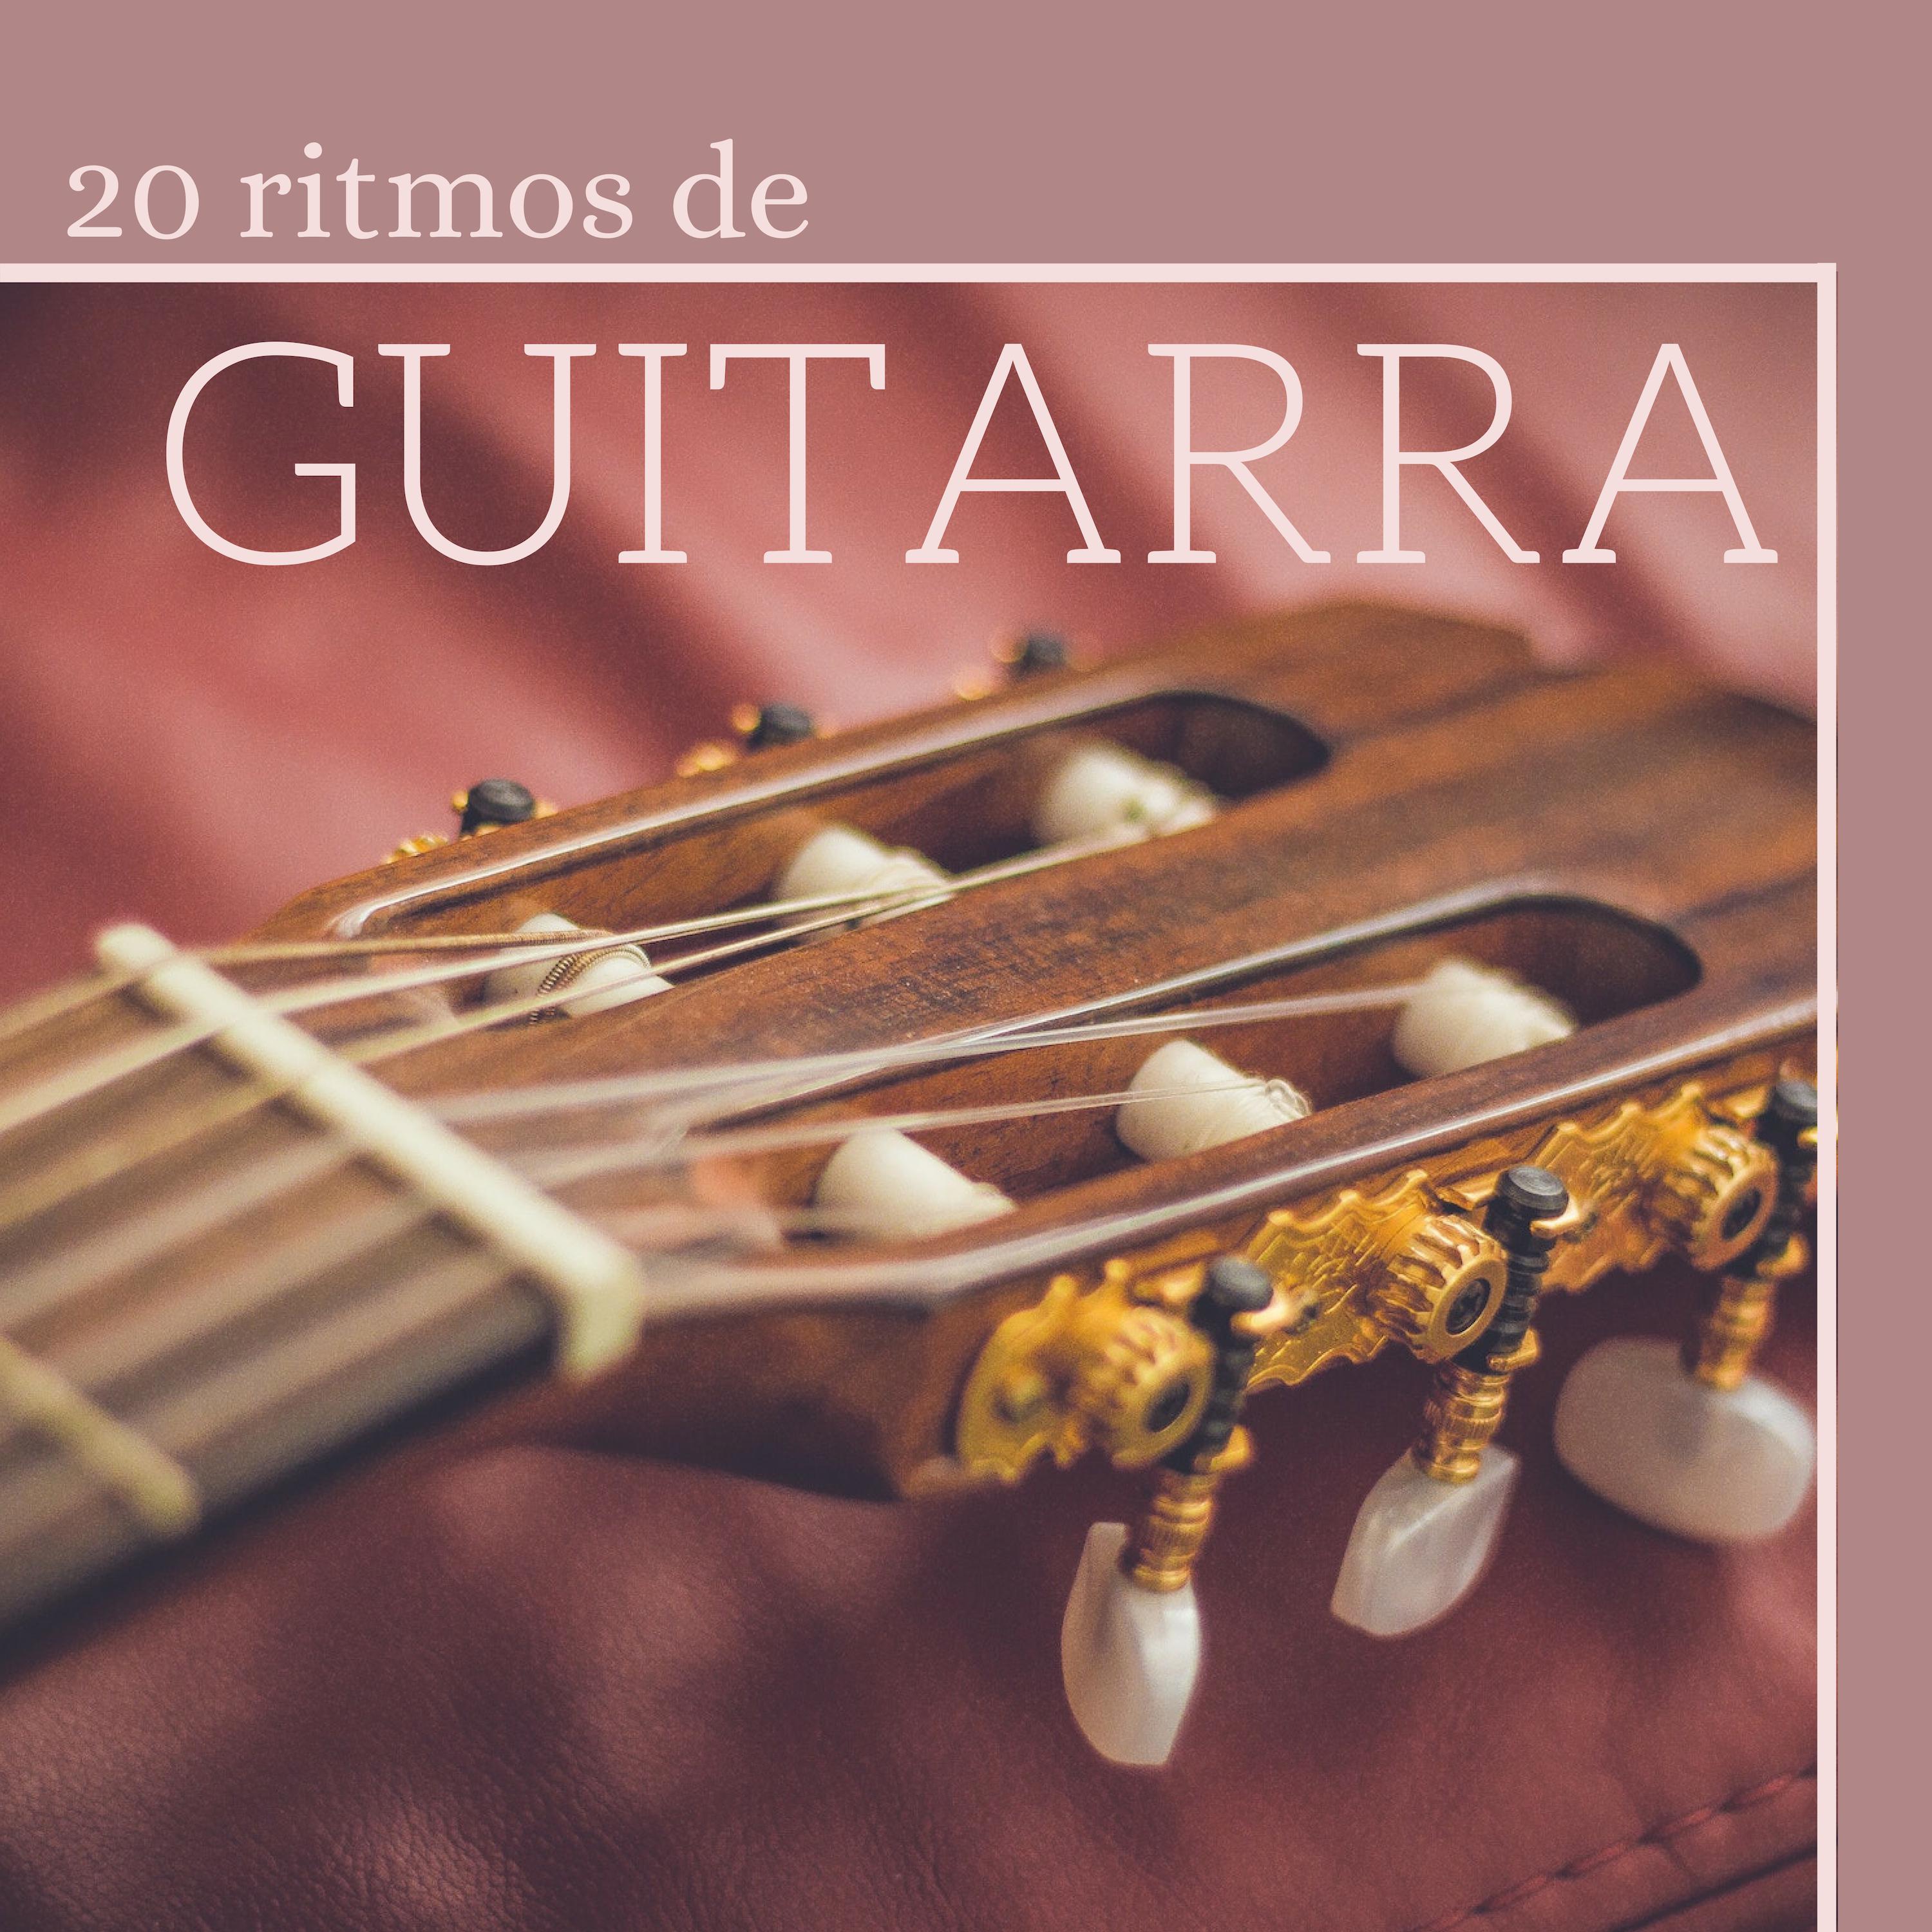 20 Ritmos de Guitarra  La Mejor Coleccio n de Mu sica New Age Relajacio n